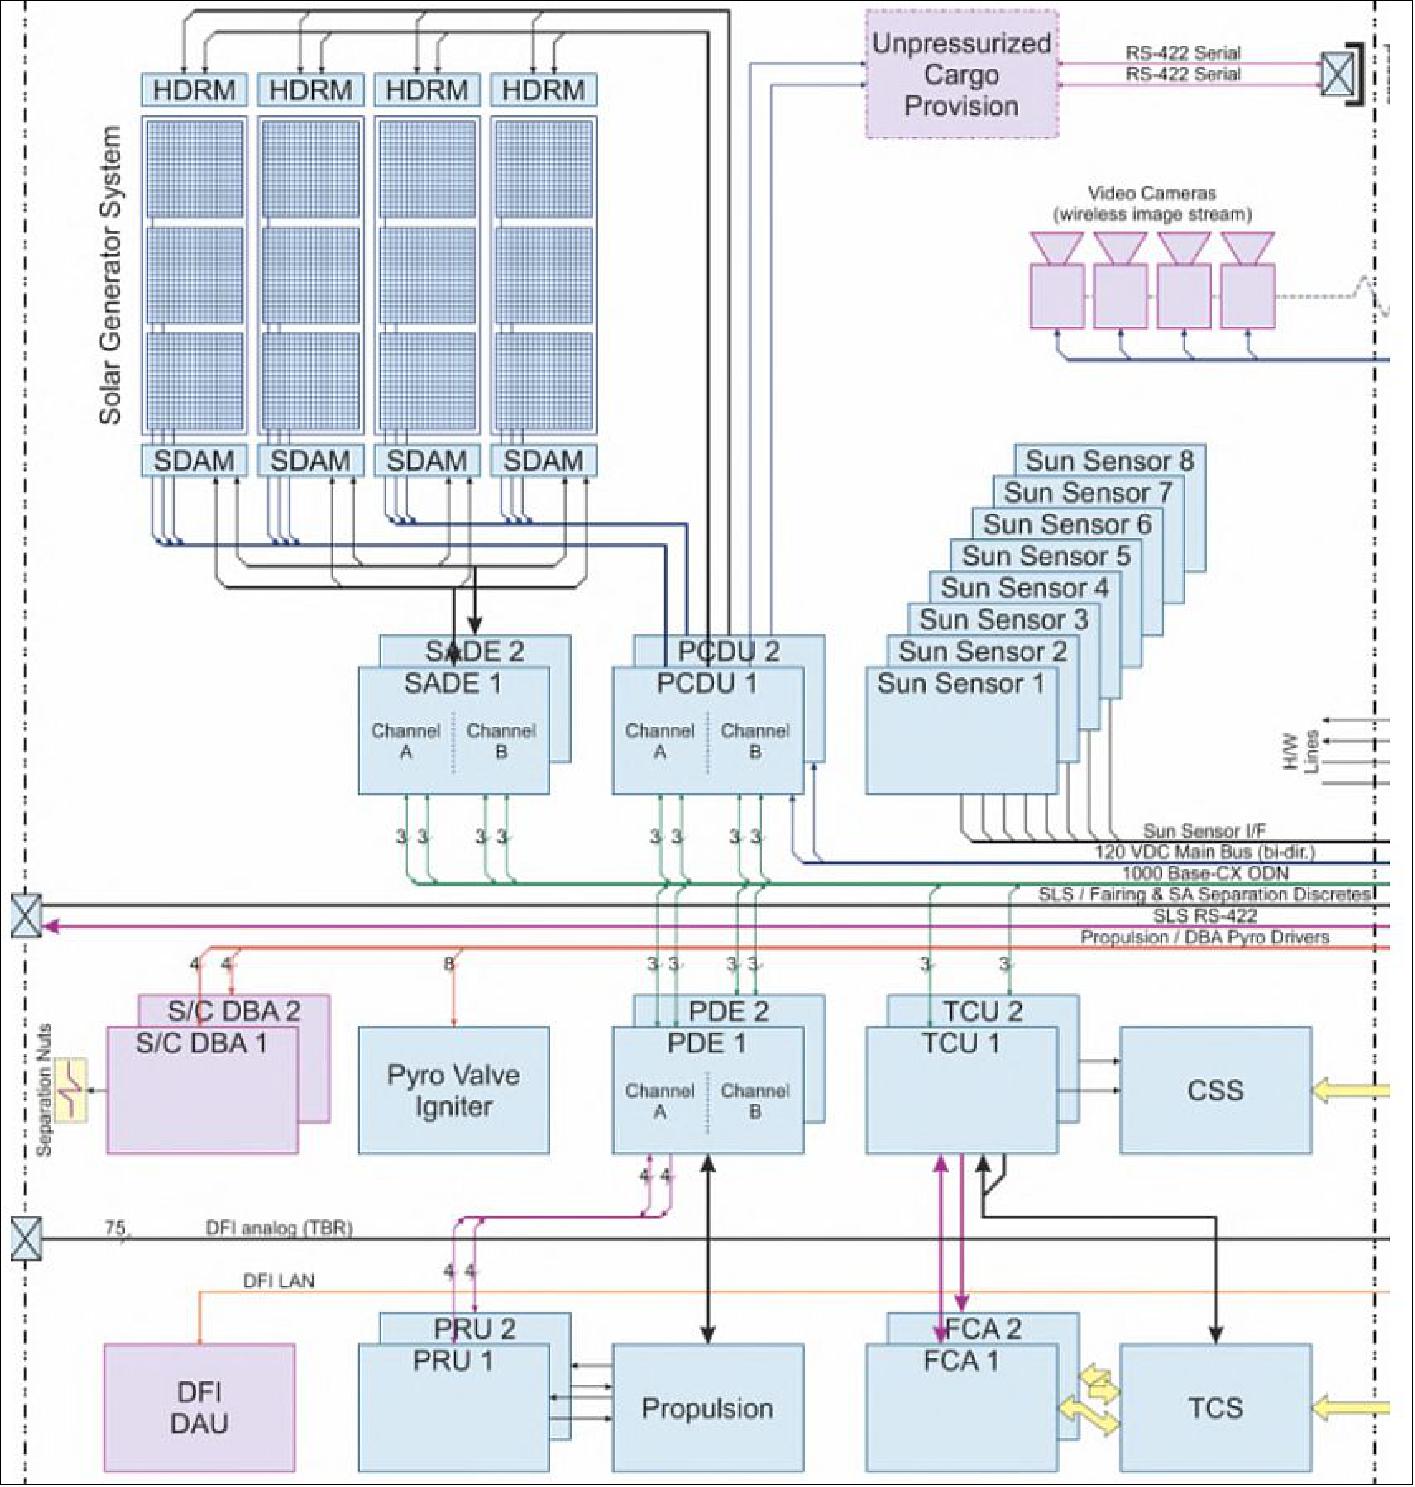 Figure 17: ESM functional architecture (image credit: ESA, Airbus DS)